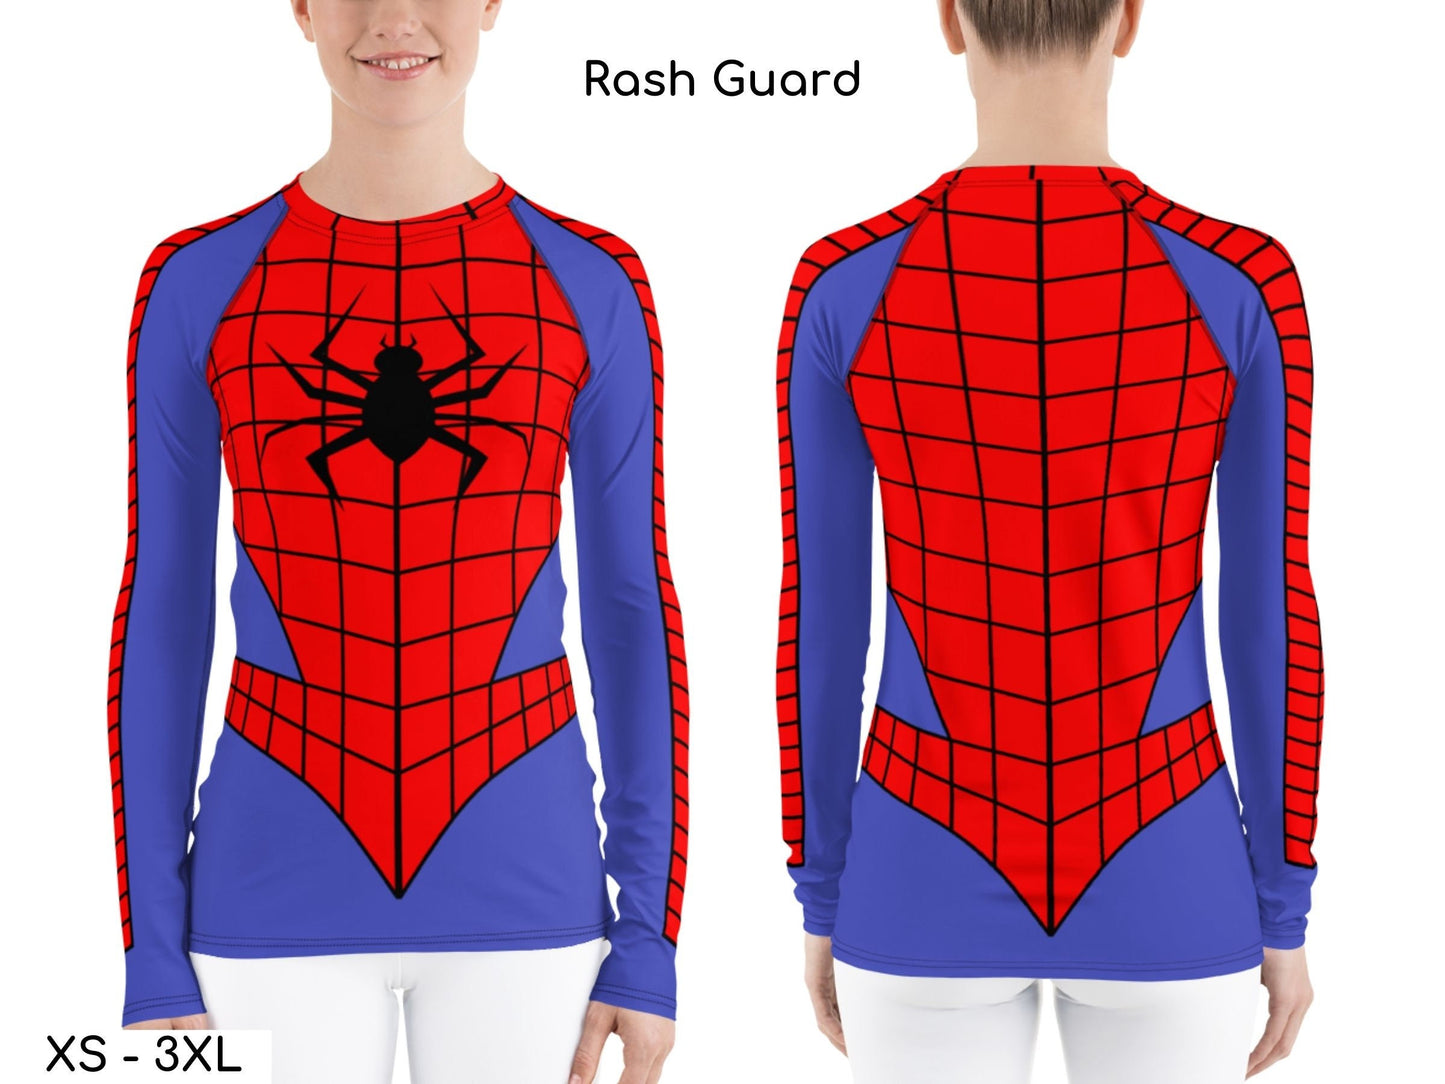 Spider Inspired  Leggings, Rash Guard, Yoga Leggings & Capris, Crop Top, Halloween Costume, Cosplay, Comics, Super, Hero